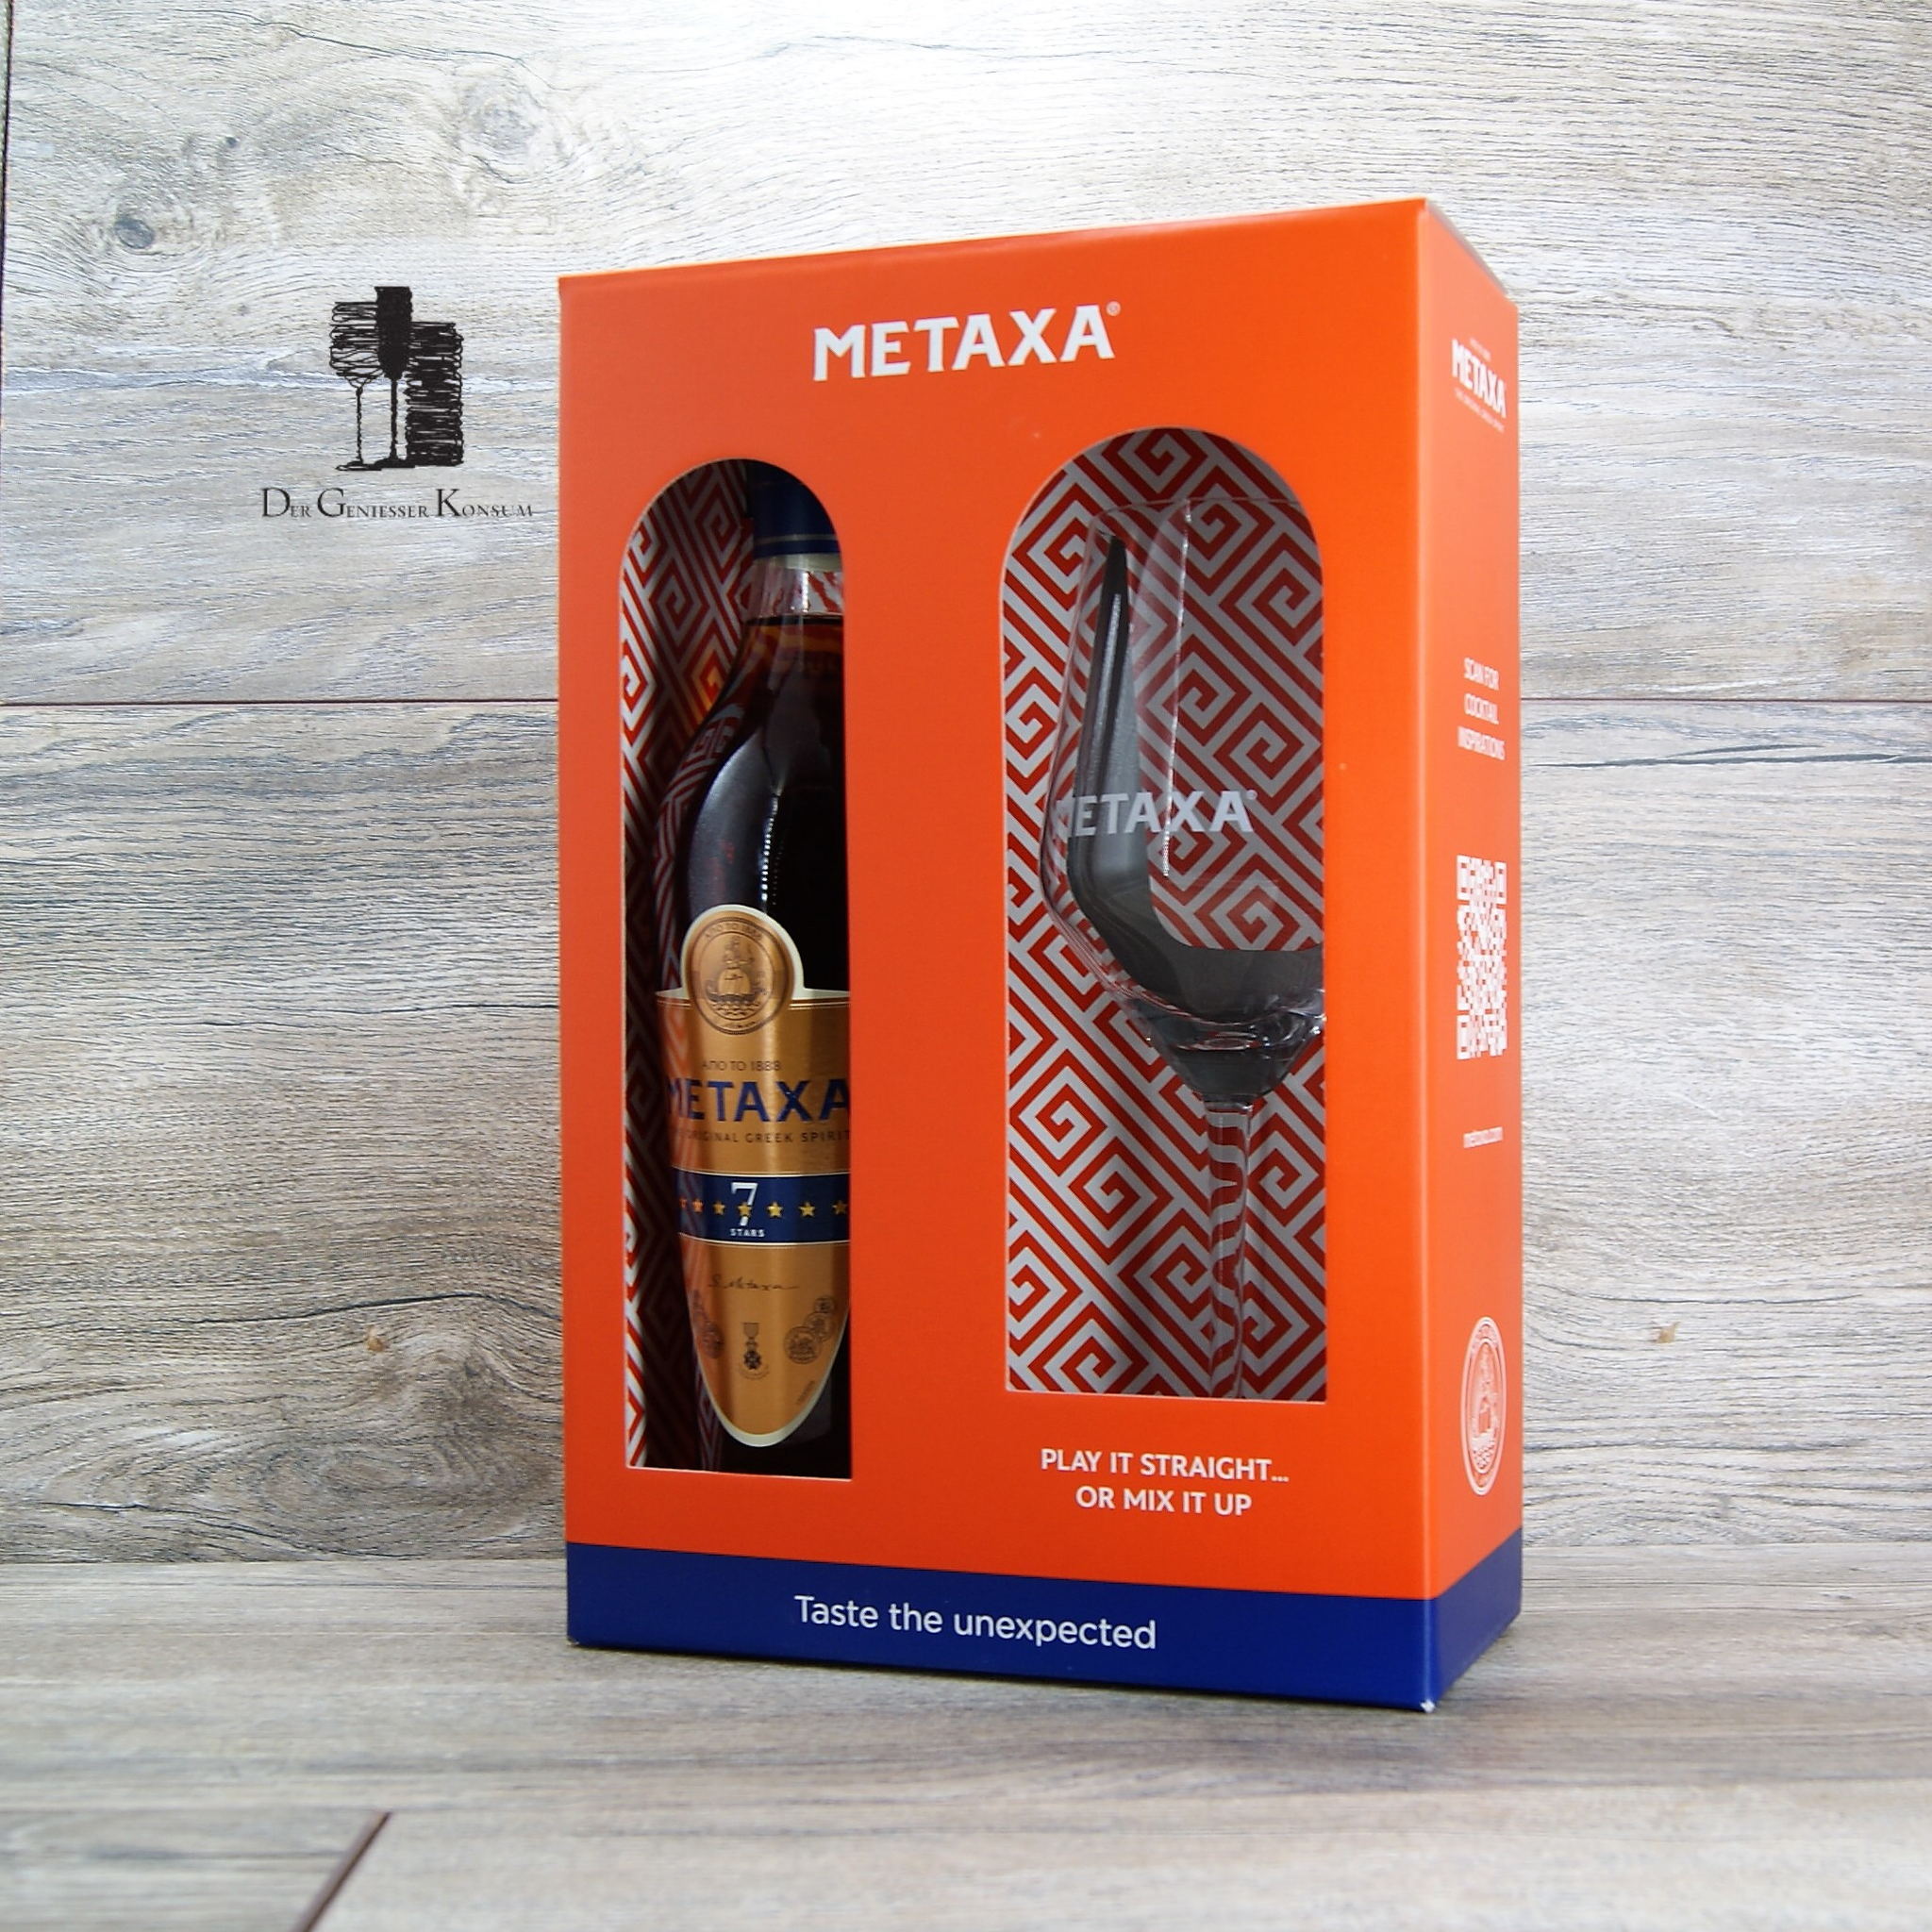 Metaxa 7 Geschenk-Edition Glas, 0,7l, Geniesser 40% 1x Sterne Der mit – Konsum